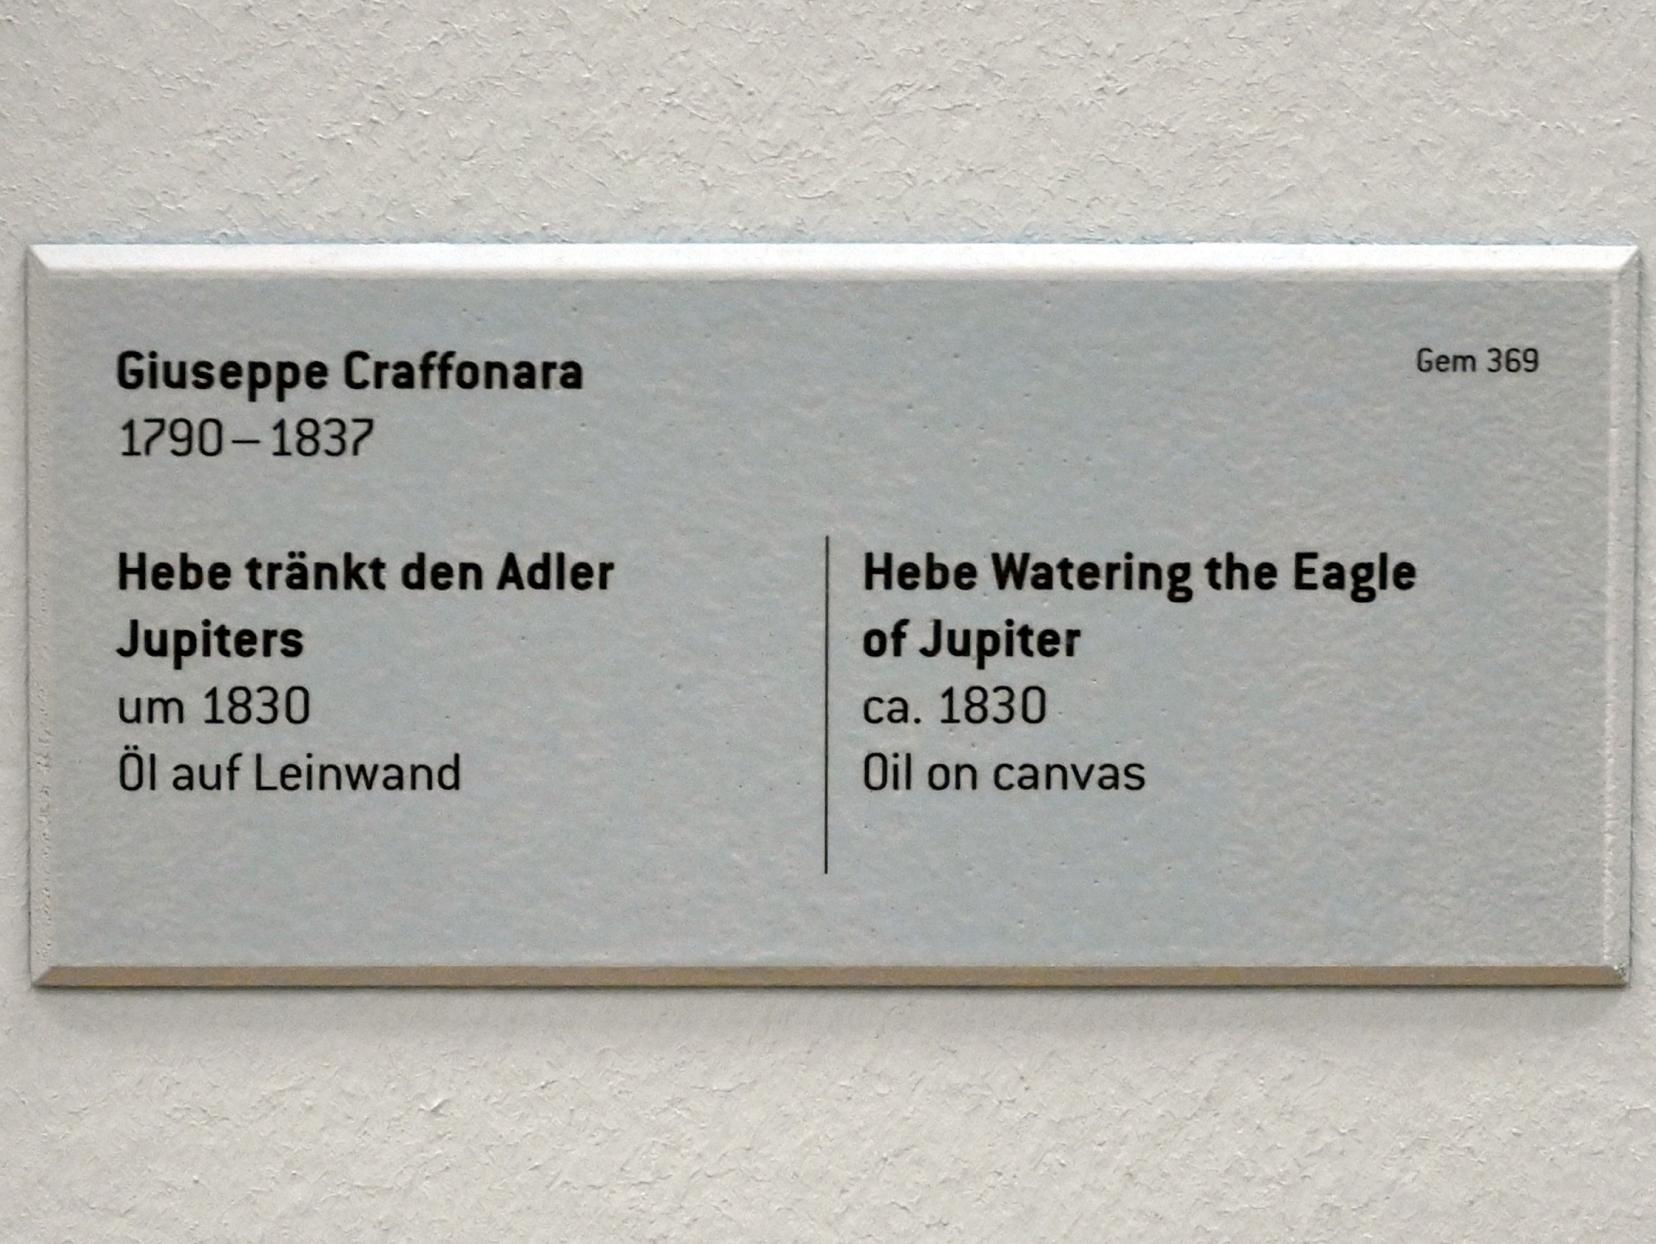 Giuseppe Craffonara (1830), Hebe tränkt den Adler Jupiters, Innsbruck, Tiroler Landesmuseum, Ferdinandeum, Saal 6, um 1830, Bild 2/2